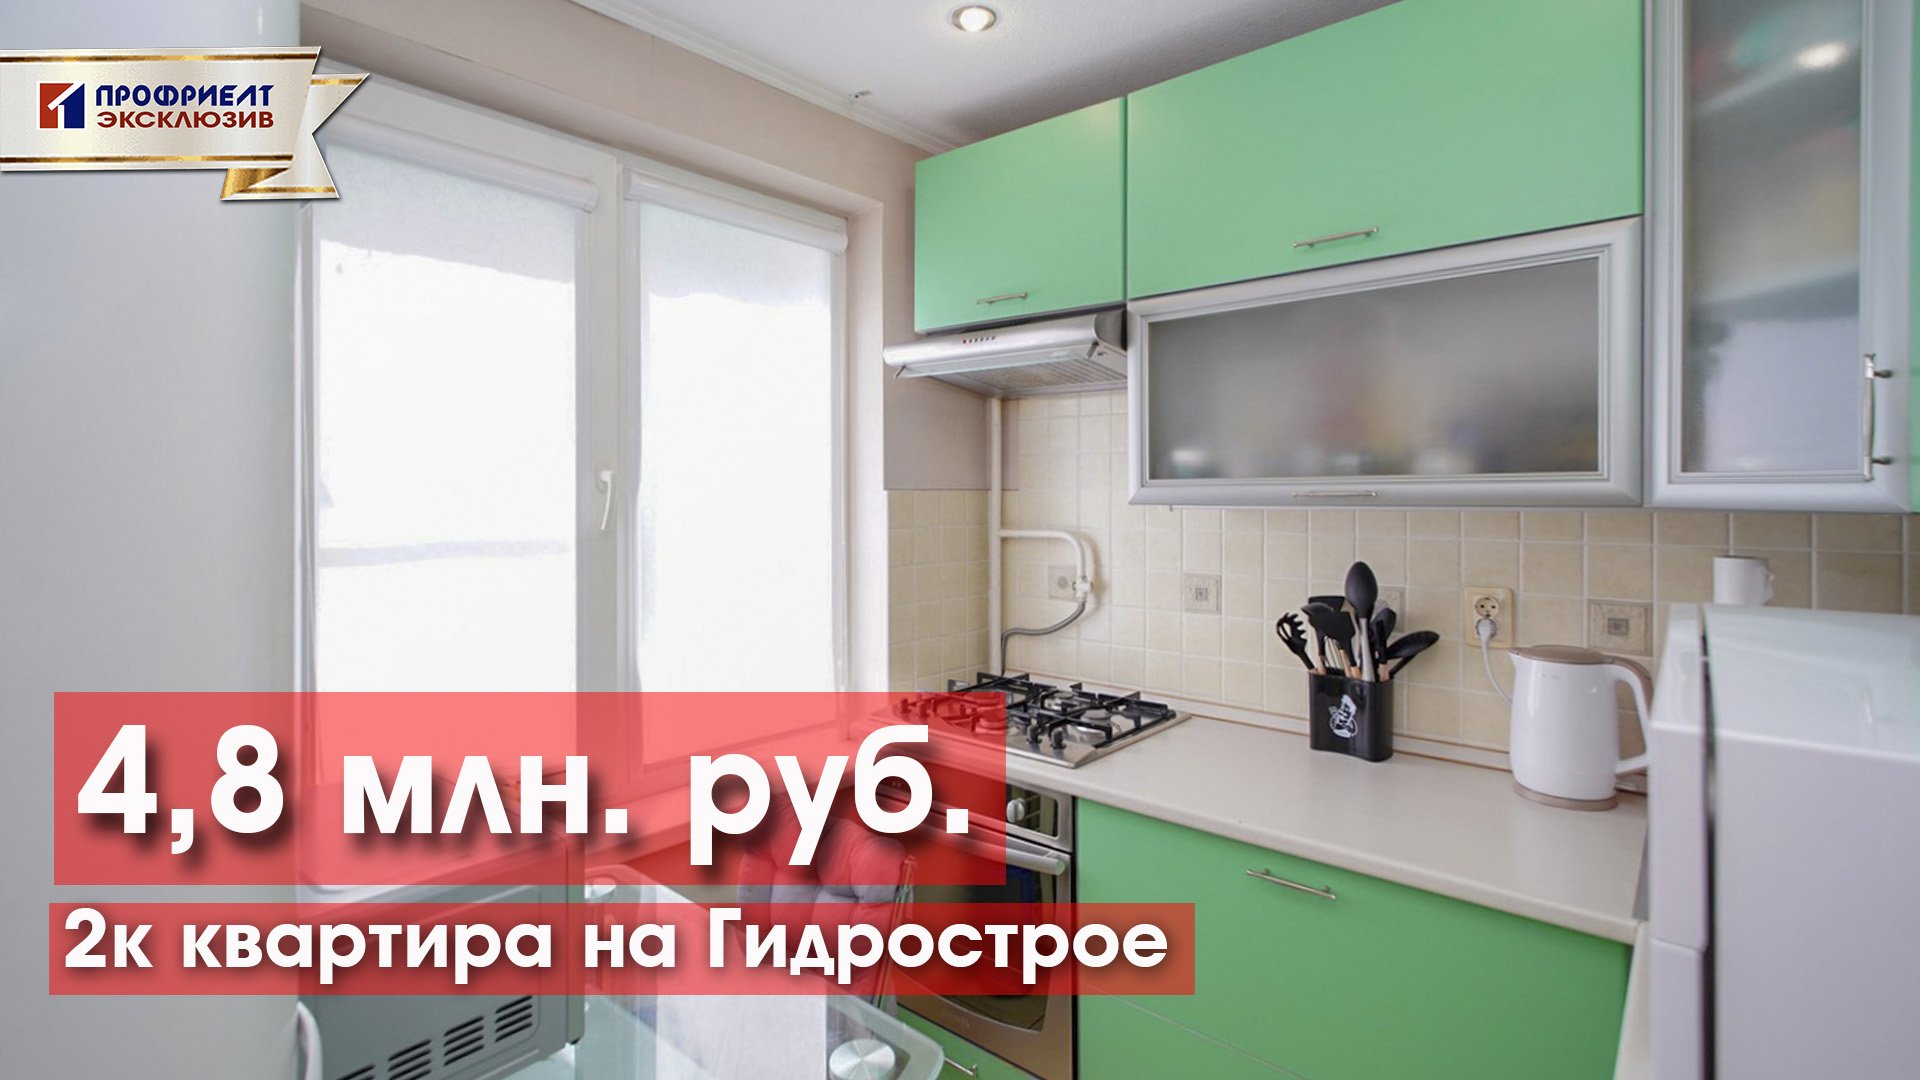 2к квартира с ремонтом и мебелью в микрорайоне Гидростроителей за 4,8 млн